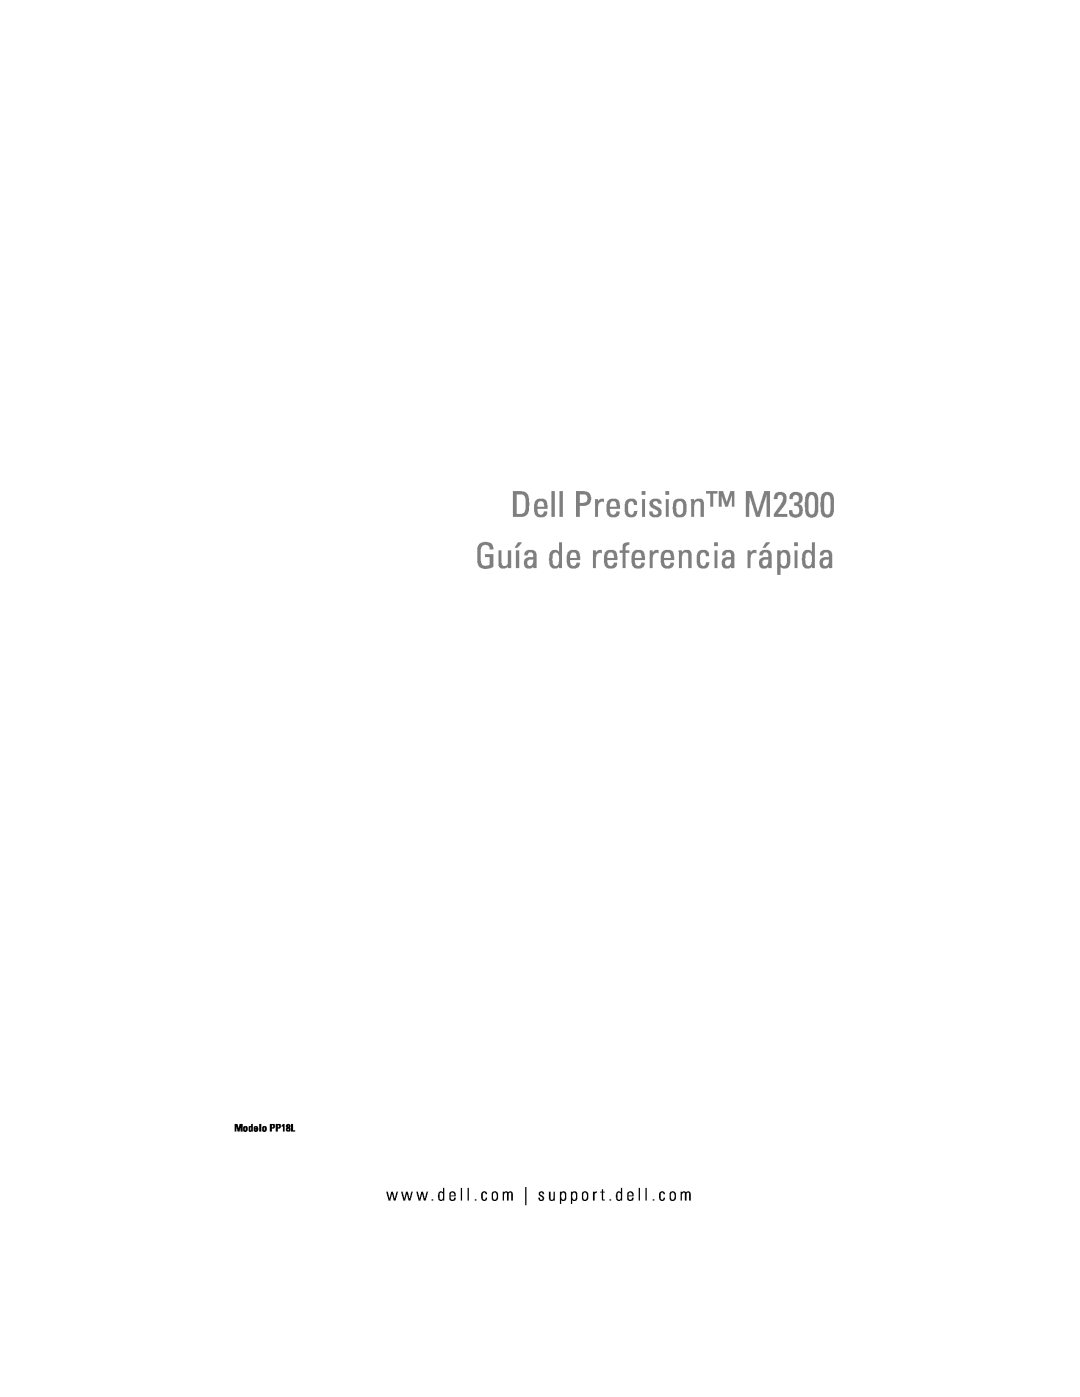 Dell PP18L manual Dell Precision M2300 Guía de referencia rápida, w w w . d e l l . c o m s u p p o r t . d e l l . c o m 